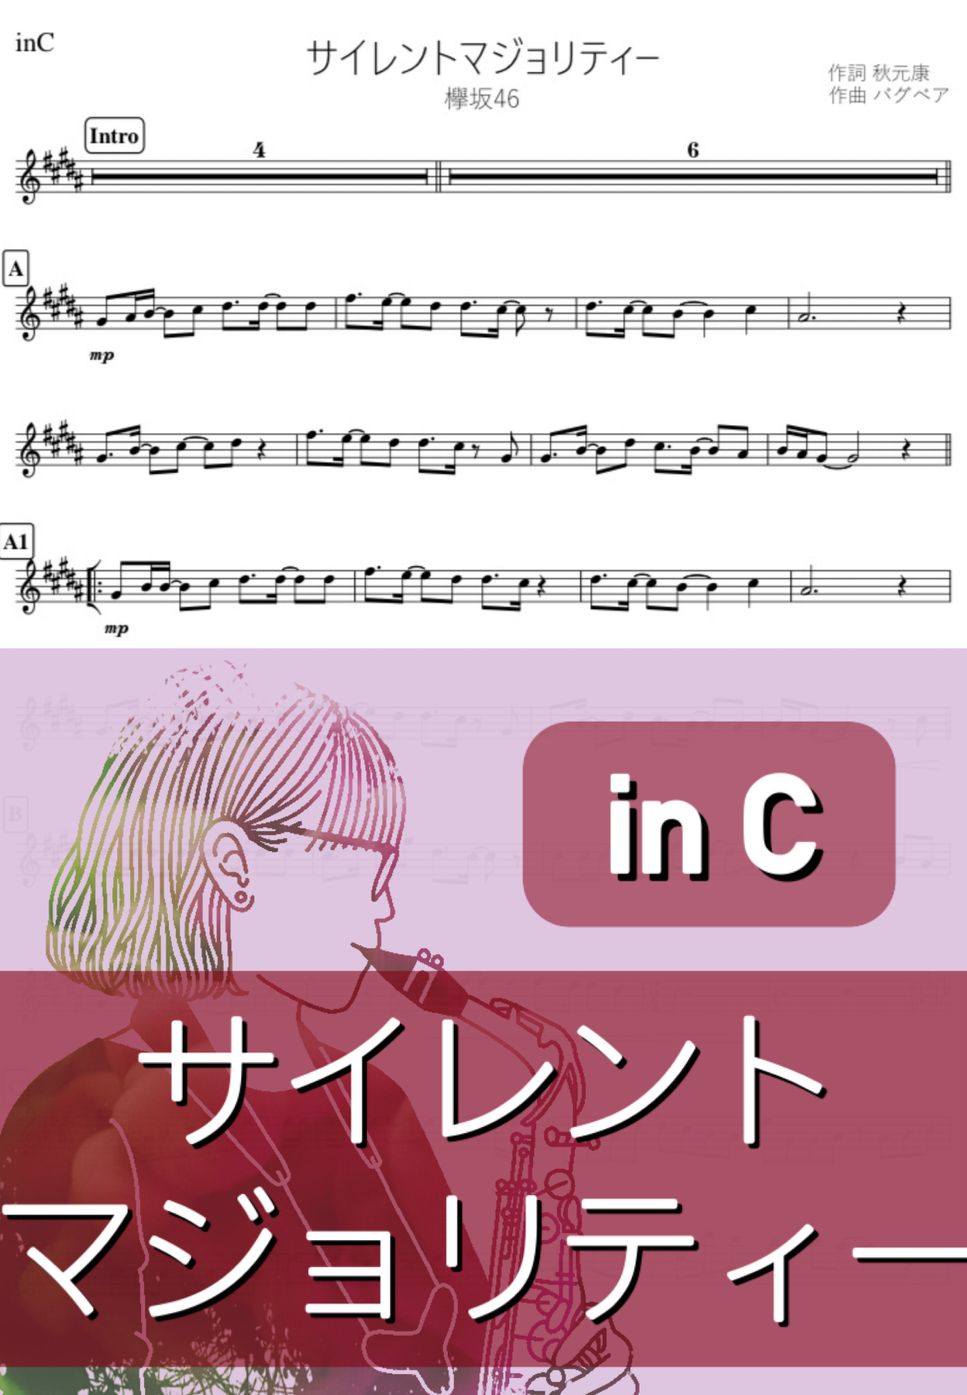 欅坂46 - サイレントマジョリティー (C) by kanamusic